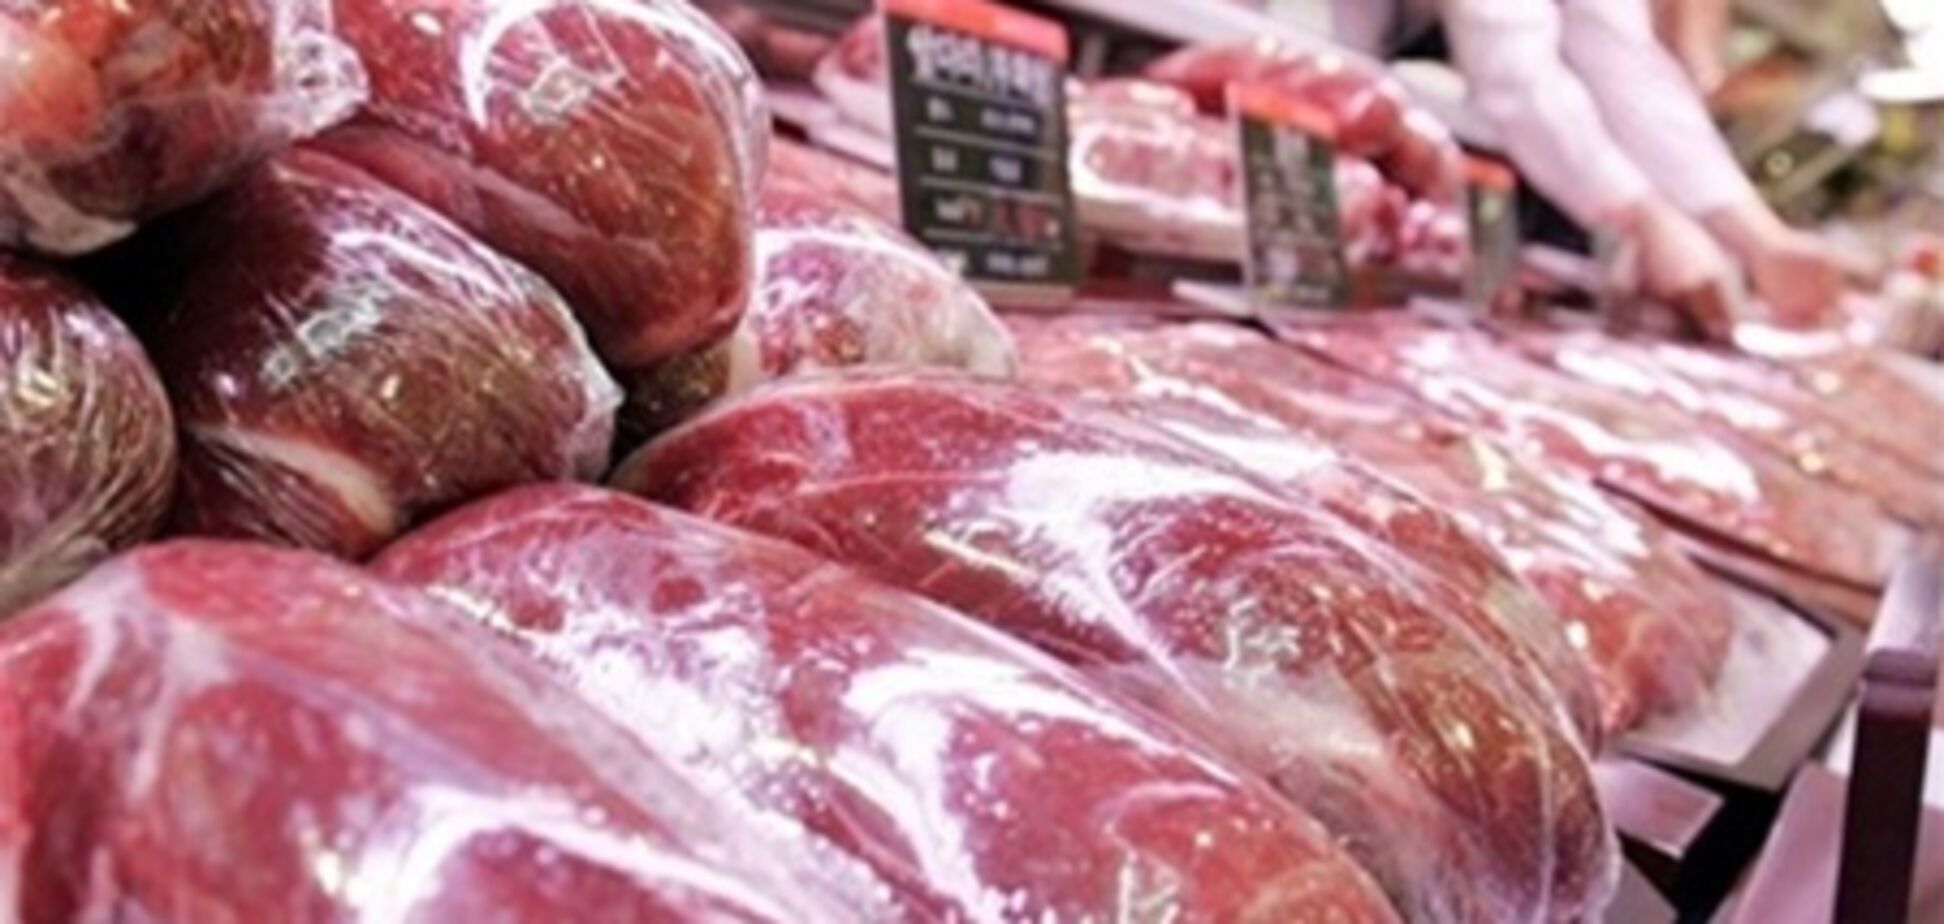 В Украину ввозили мясо из эпидемически опасных стран